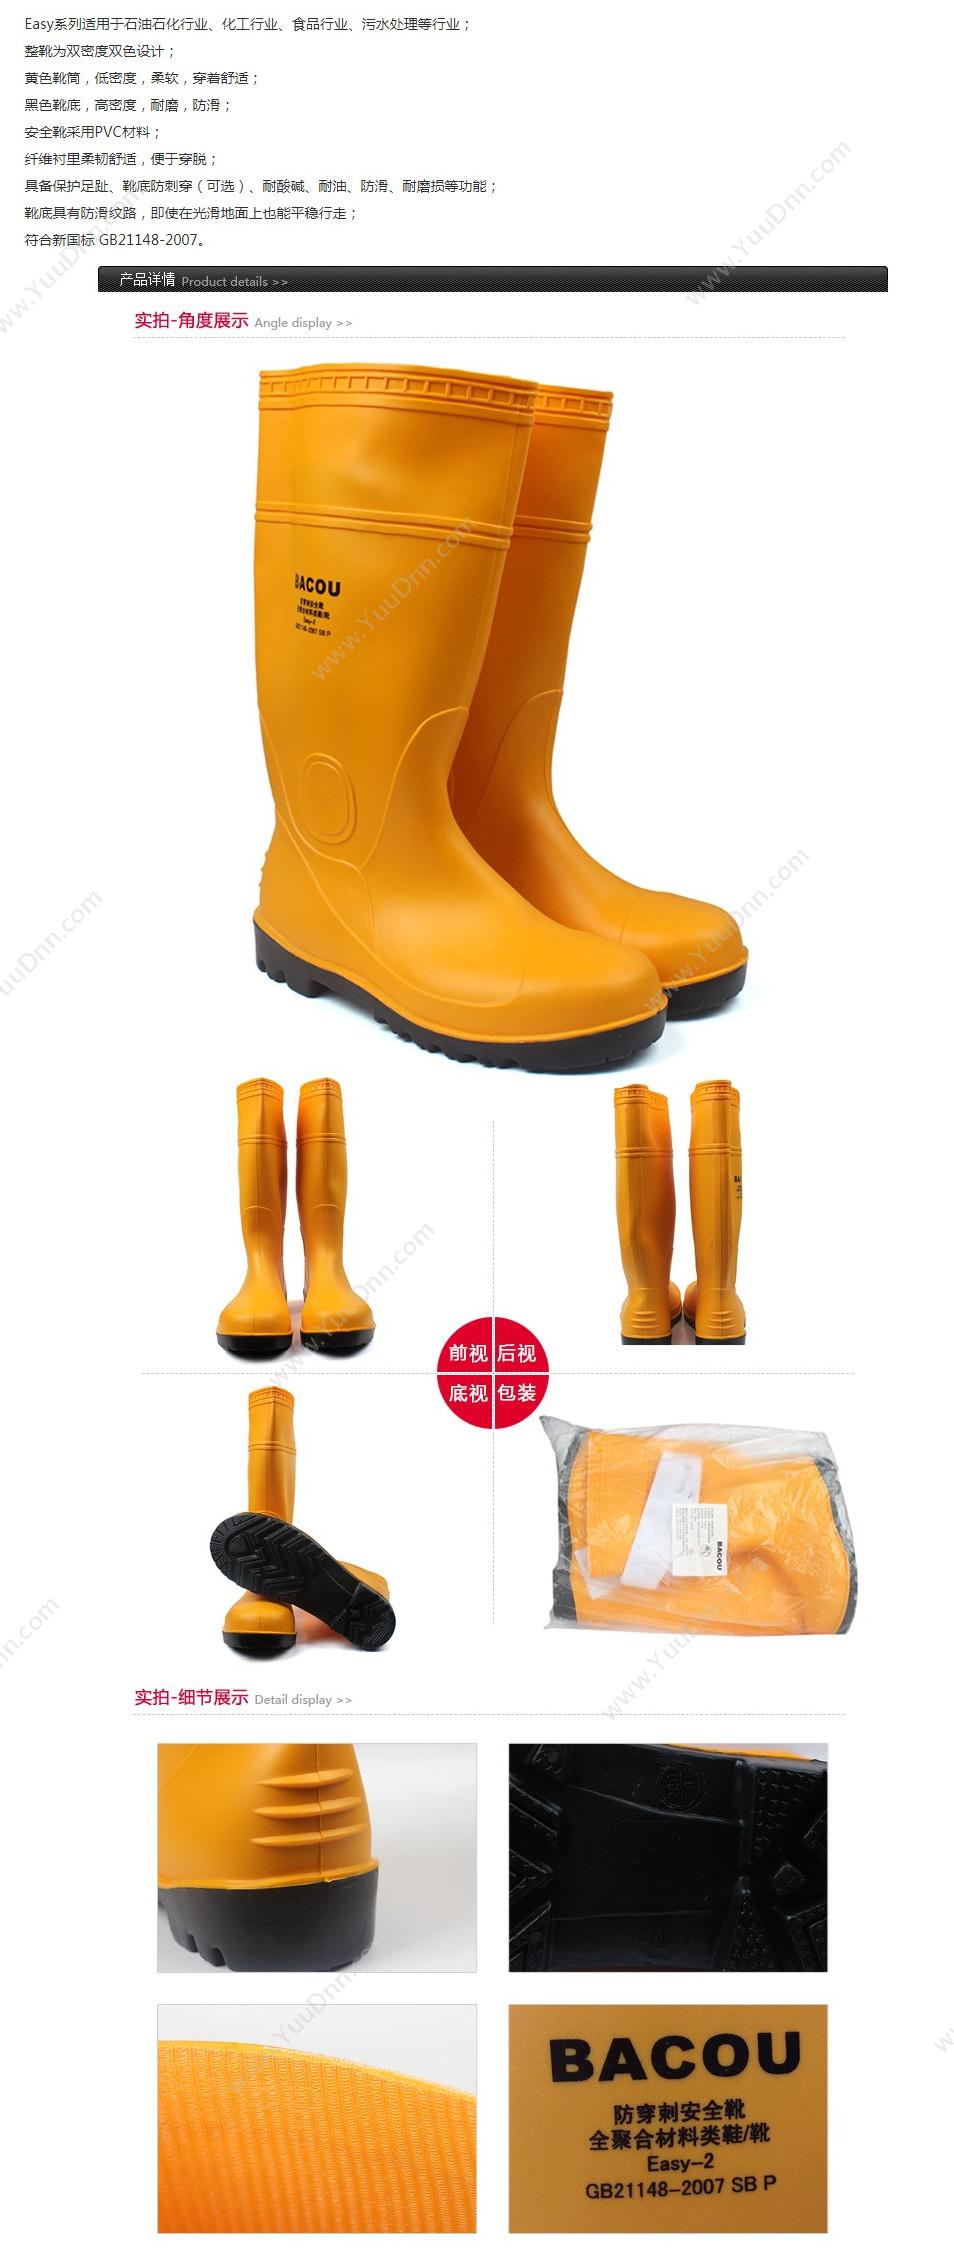 霍尼韦尔 Honeywell 75708 PVC 安全靴Easy 轻型 41 橘黄色 10双/箱 轻便鞋安全靴